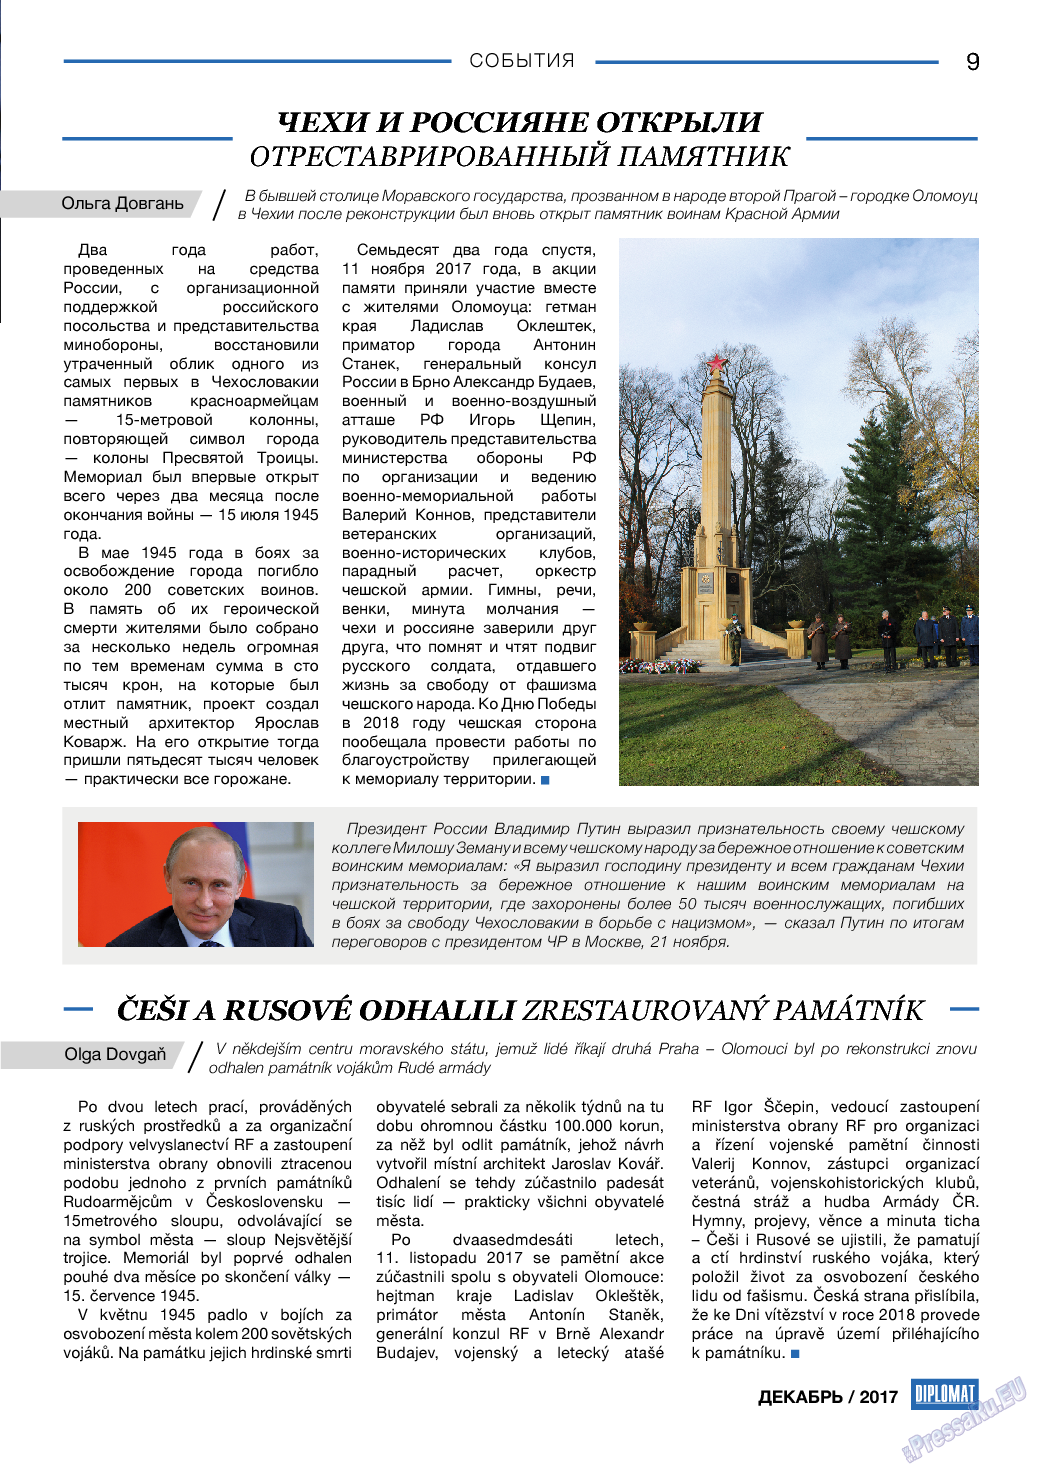 Diplomat, газета. 2017 №99 стр.9